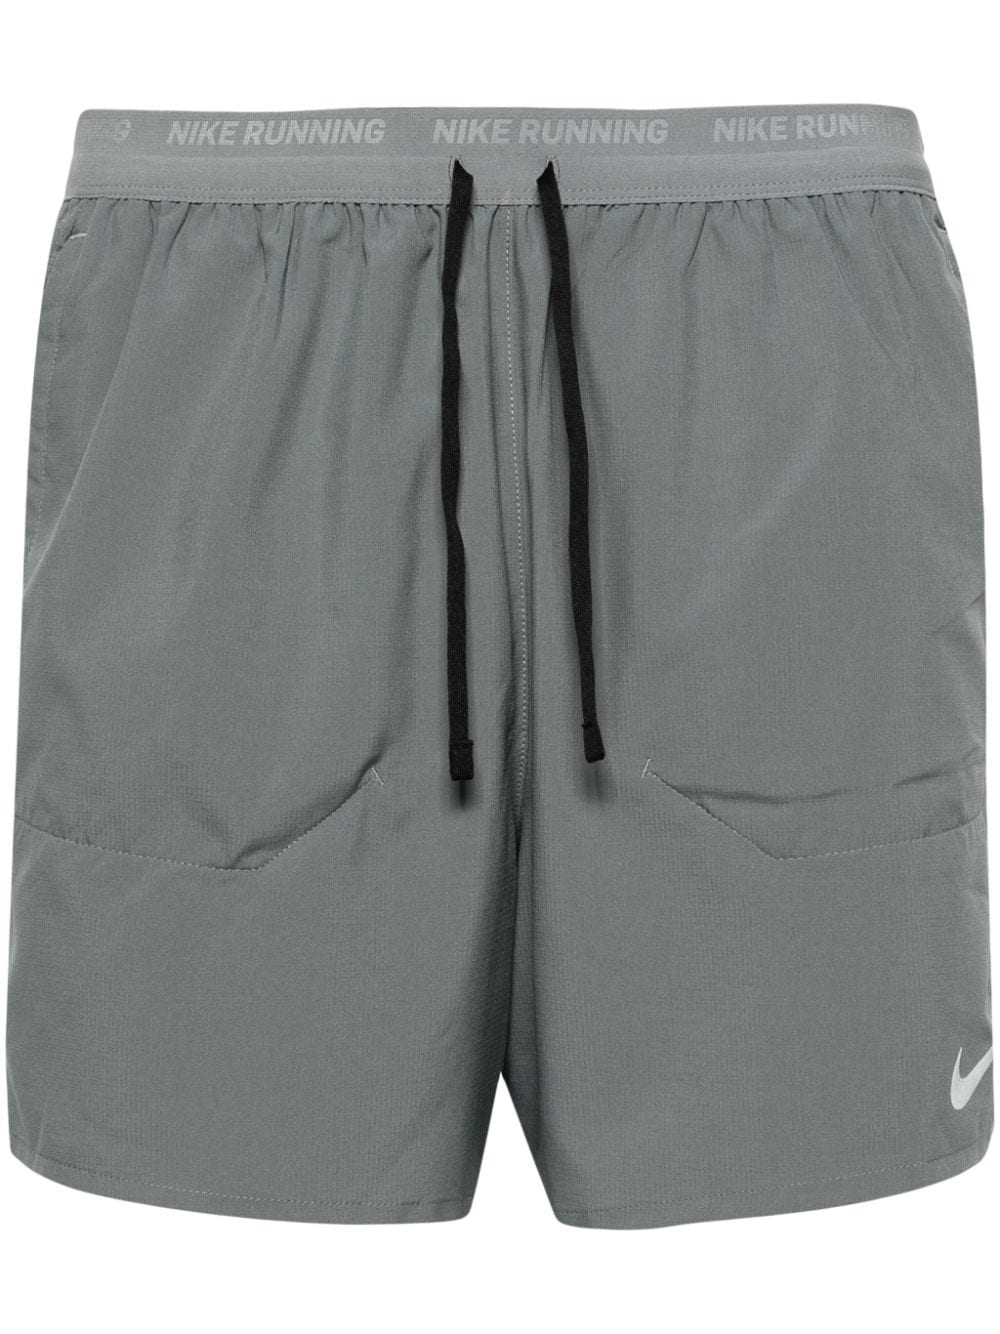 Nike Swoosh-motif Running Shorts In Grey